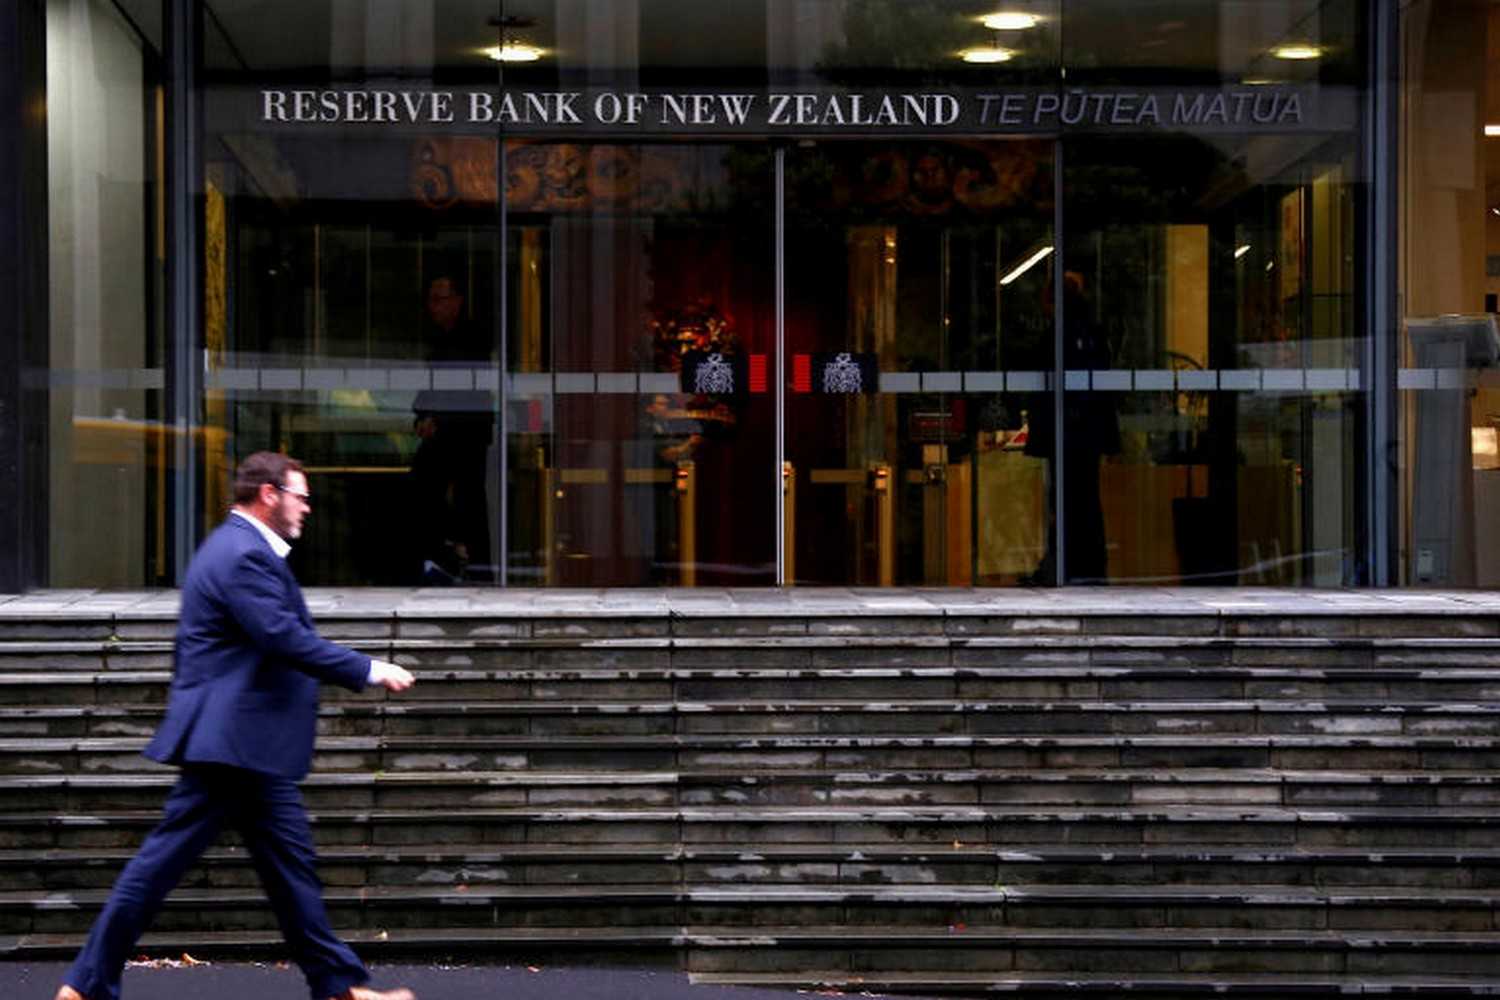 Резервный банк новой зеландиисодержание а также право собственности [ править ]